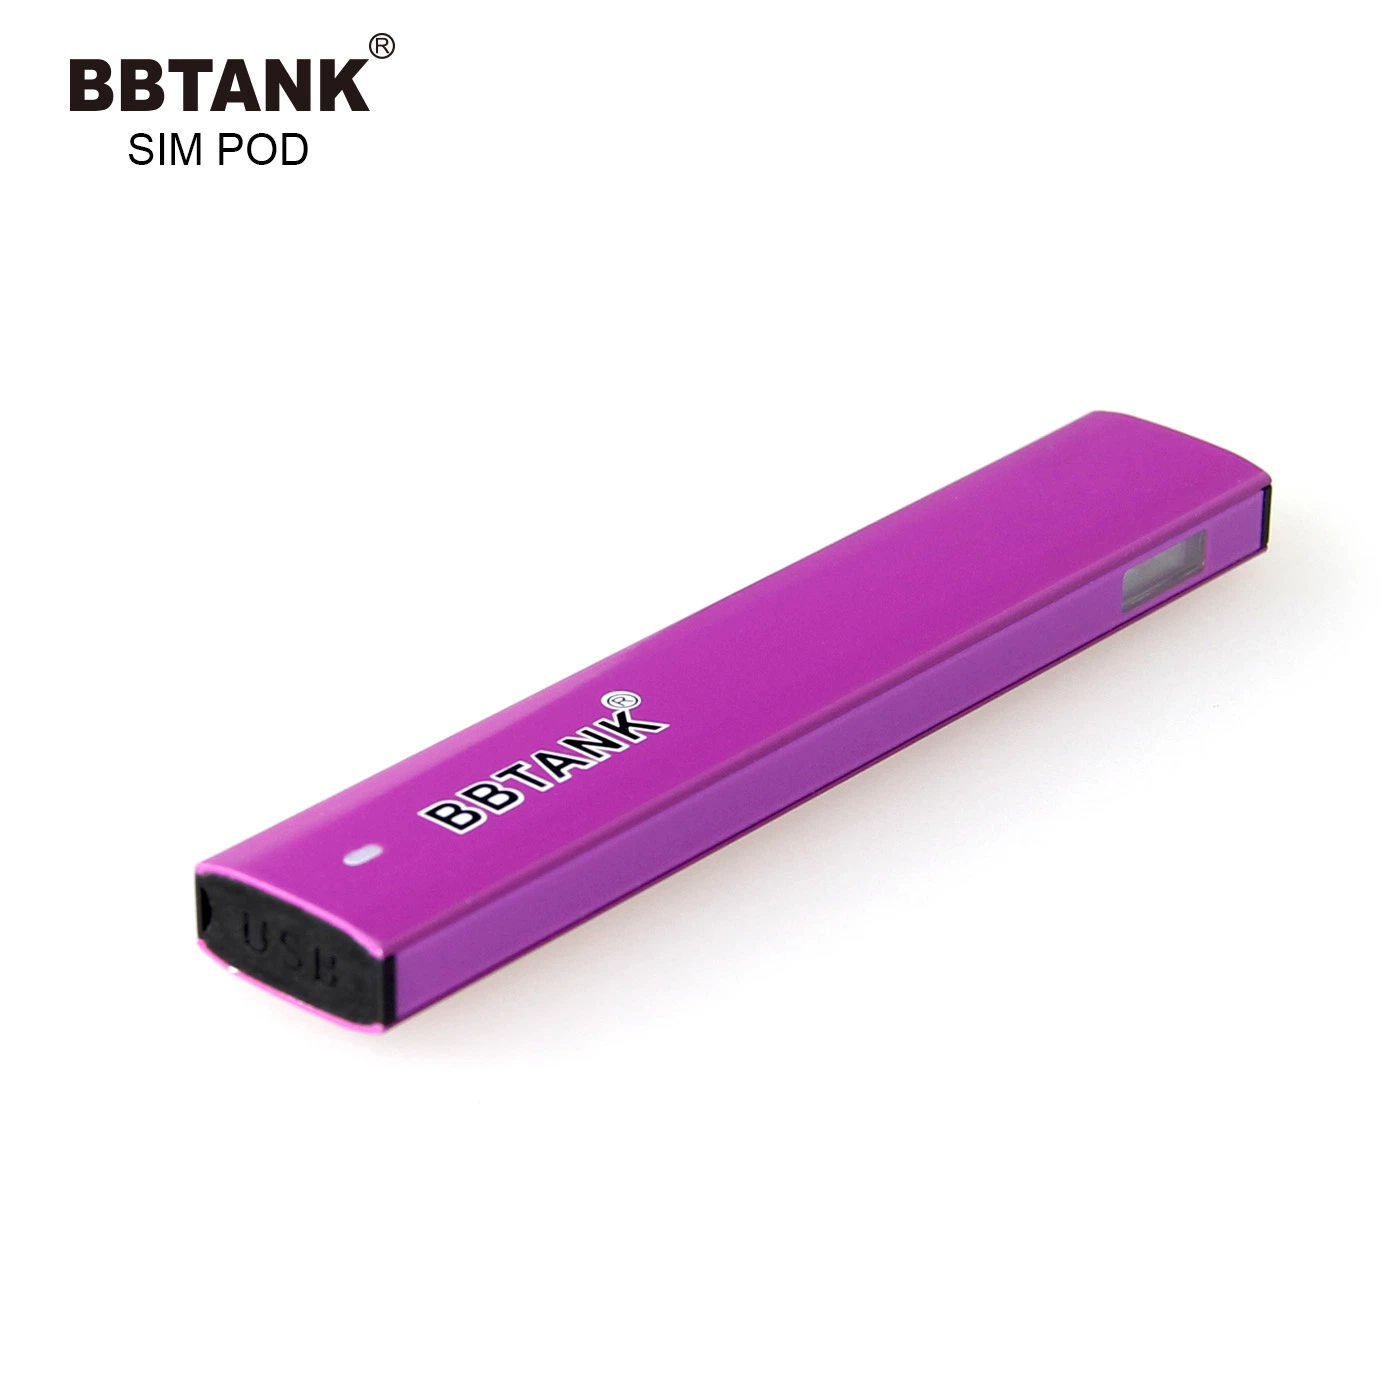 Ceraimc 1 Ml Thick Oil Pod Half Gram Vape Pen Professional Manufacturer Bbtank Disposable/Chargeable Vaporizer Pen